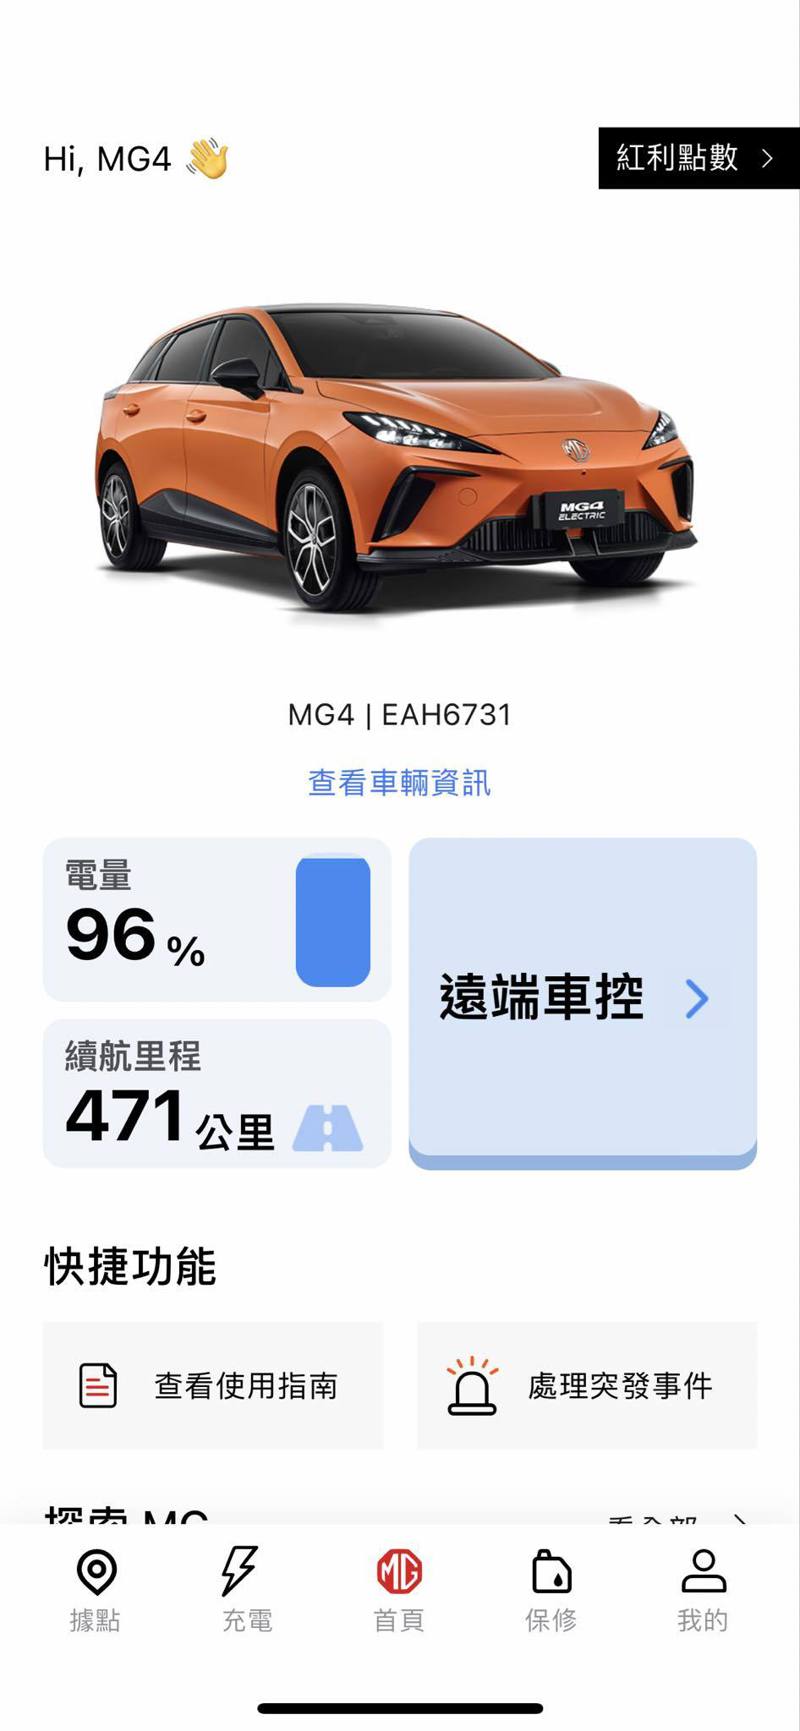 MG4強大的智慧車聯網系統更具備遠端解鎖/上鎖、遠端空調控制、遠端加熱座椅、遠端尋車、遠端電池加熱、遠端預約充電等智慧控制功能。 截自My MG app